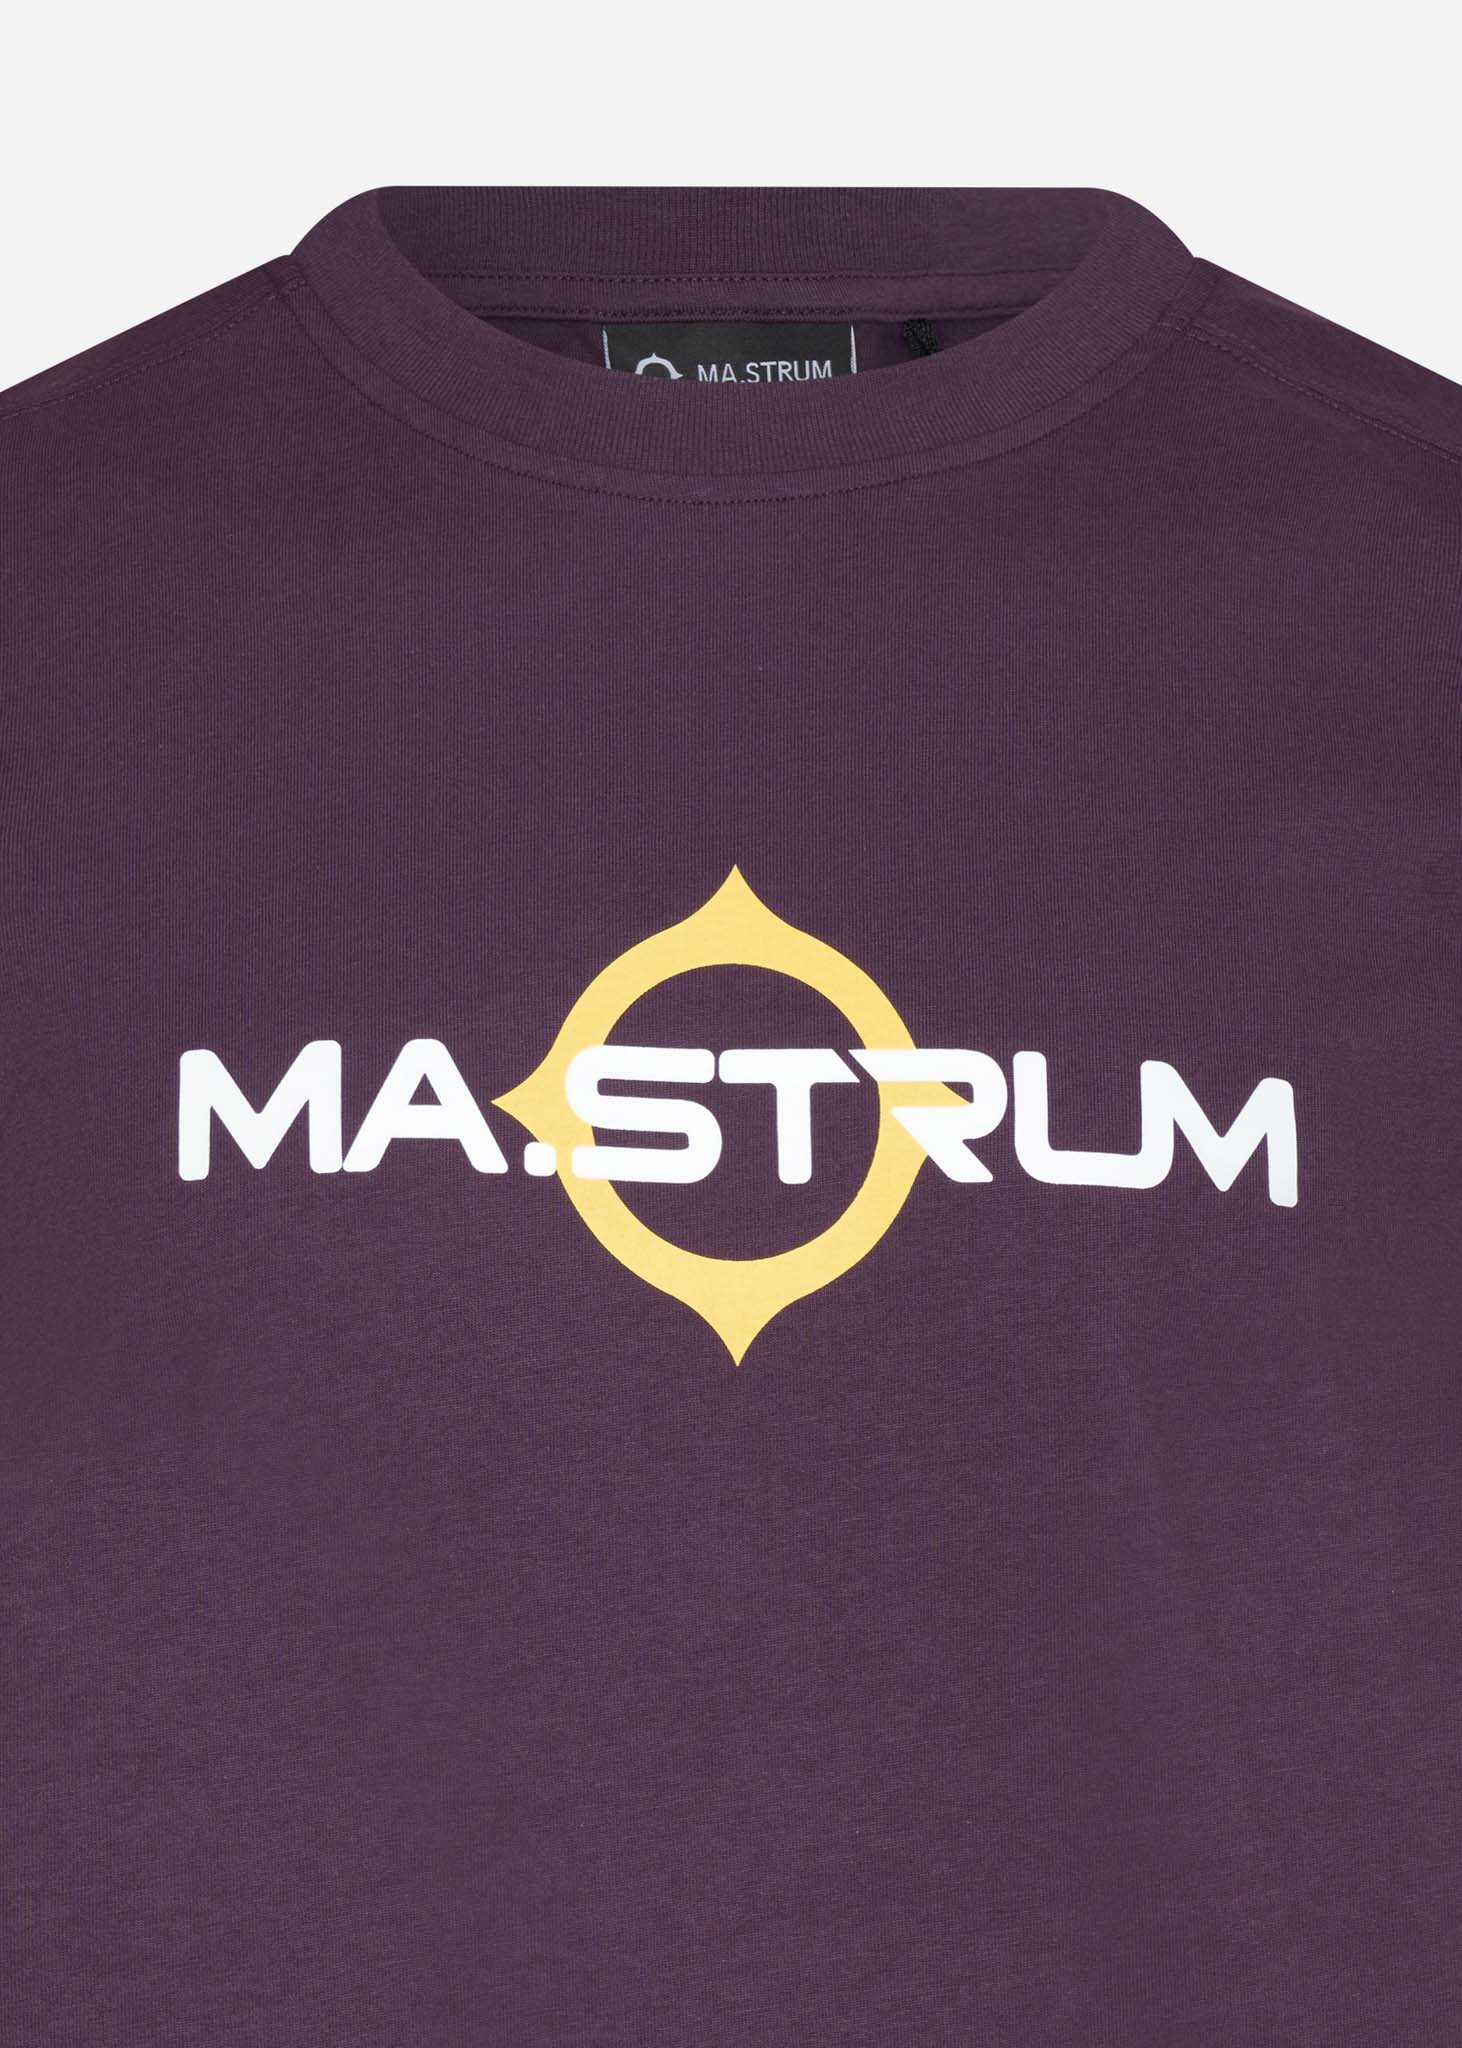 mastrum t-shirt aubergine